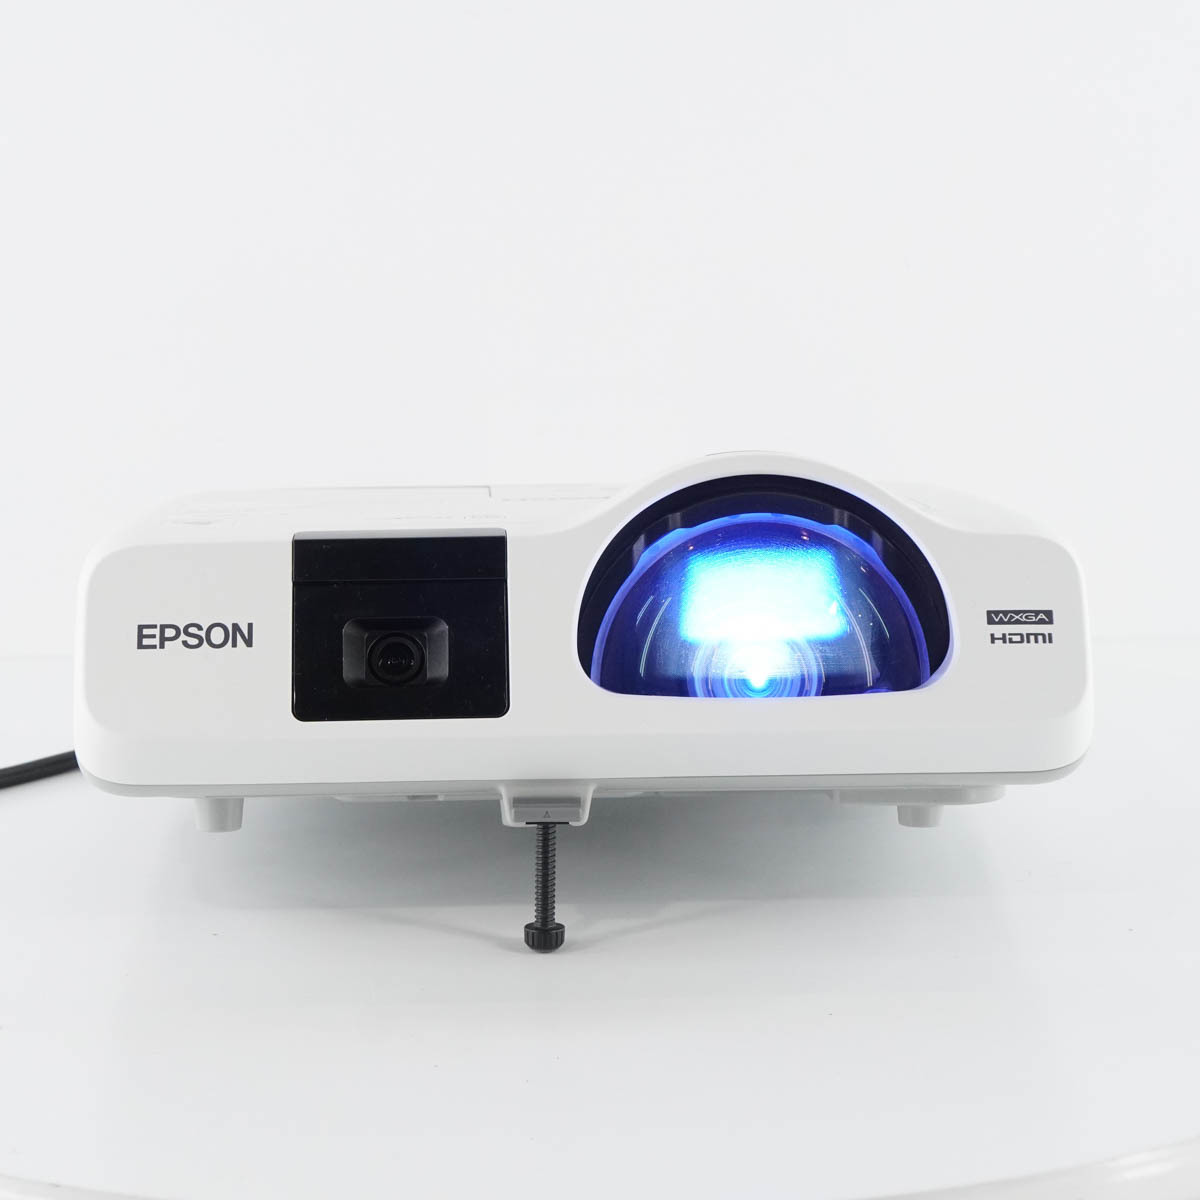 PG] 8日保証 ランプ315時間 EB-536WT H670D EPSON エプソン